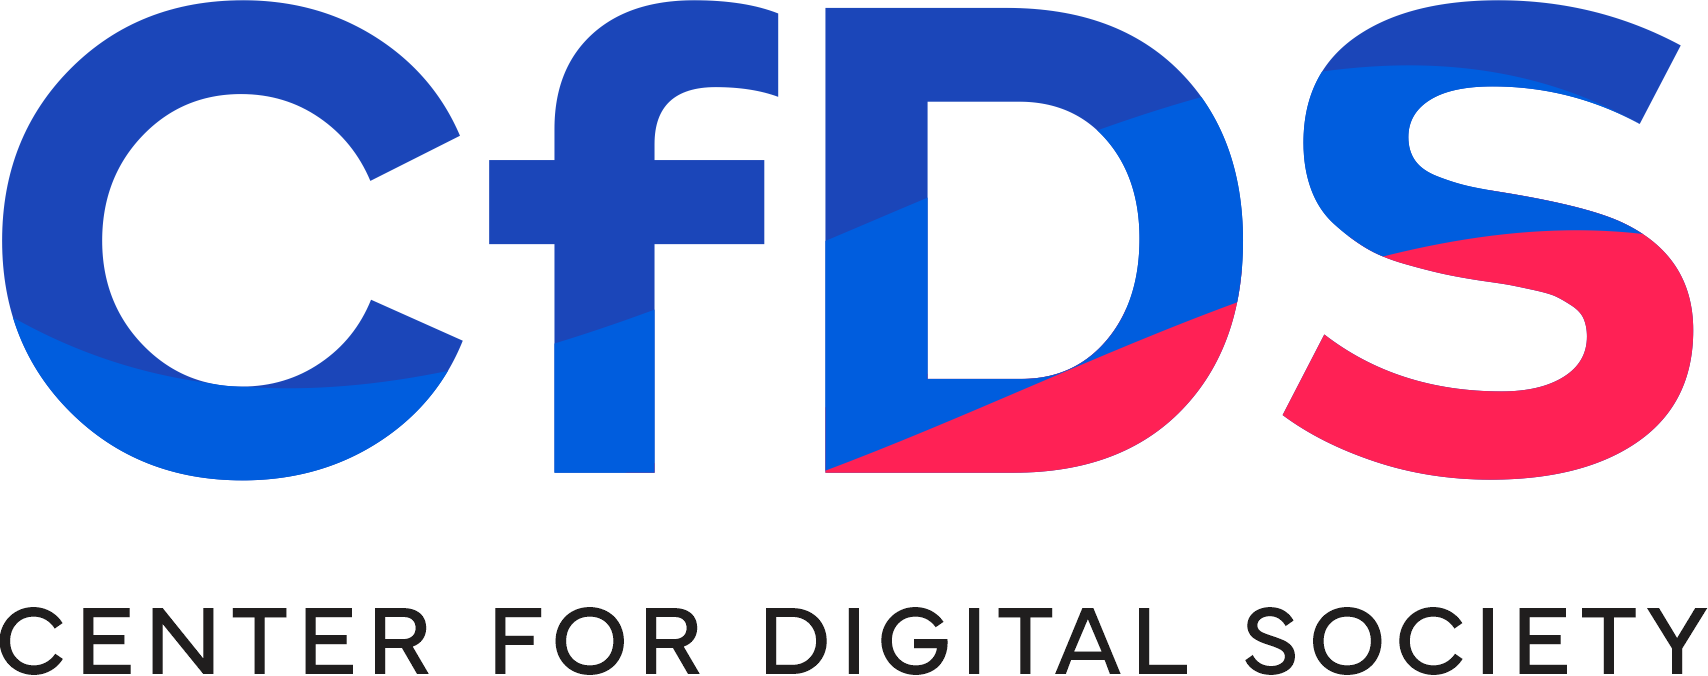 Center for Digital Society Logo